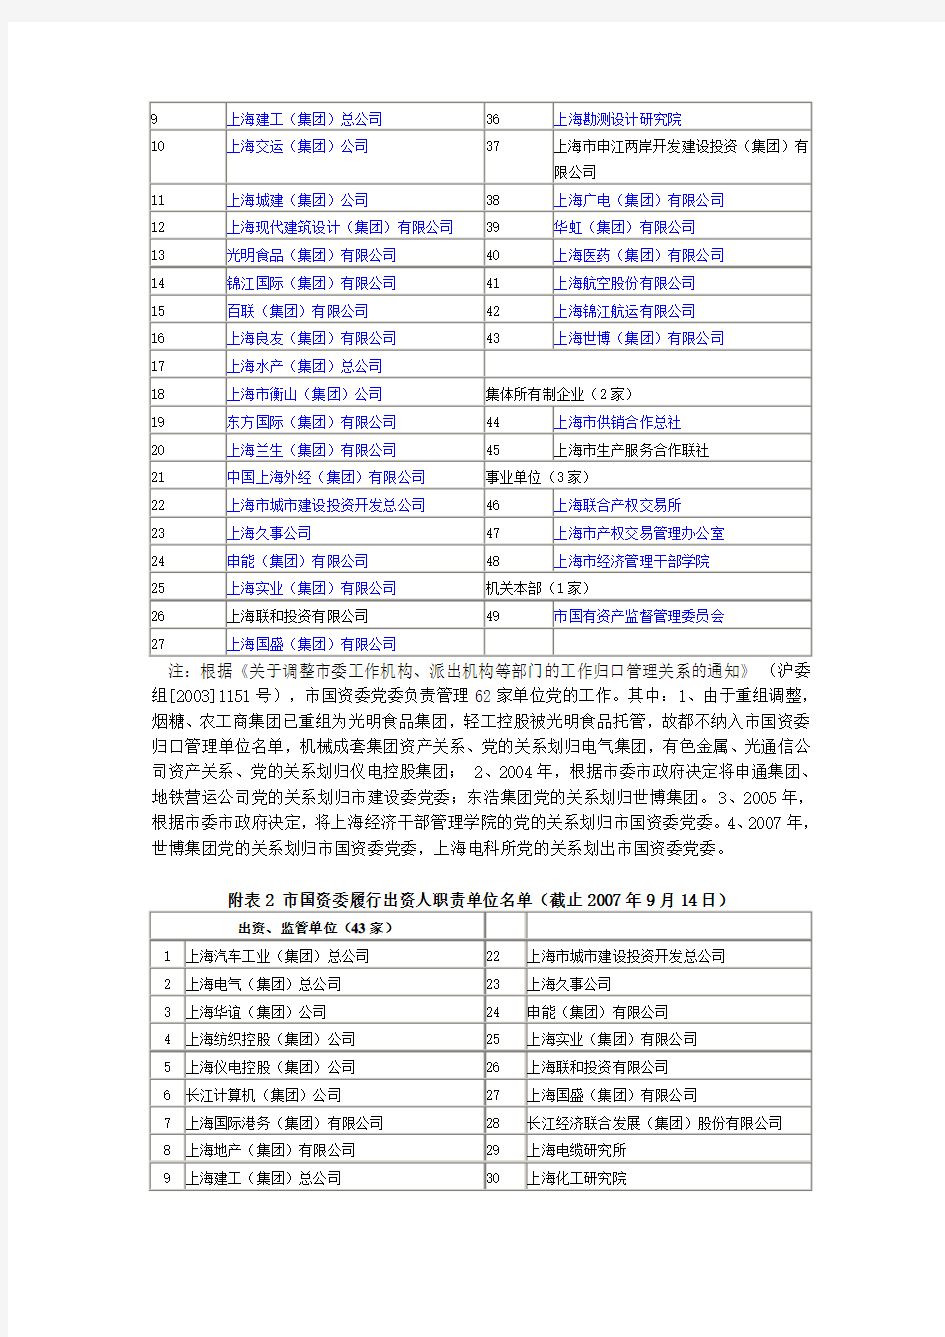 华东地区国有重点企业名单